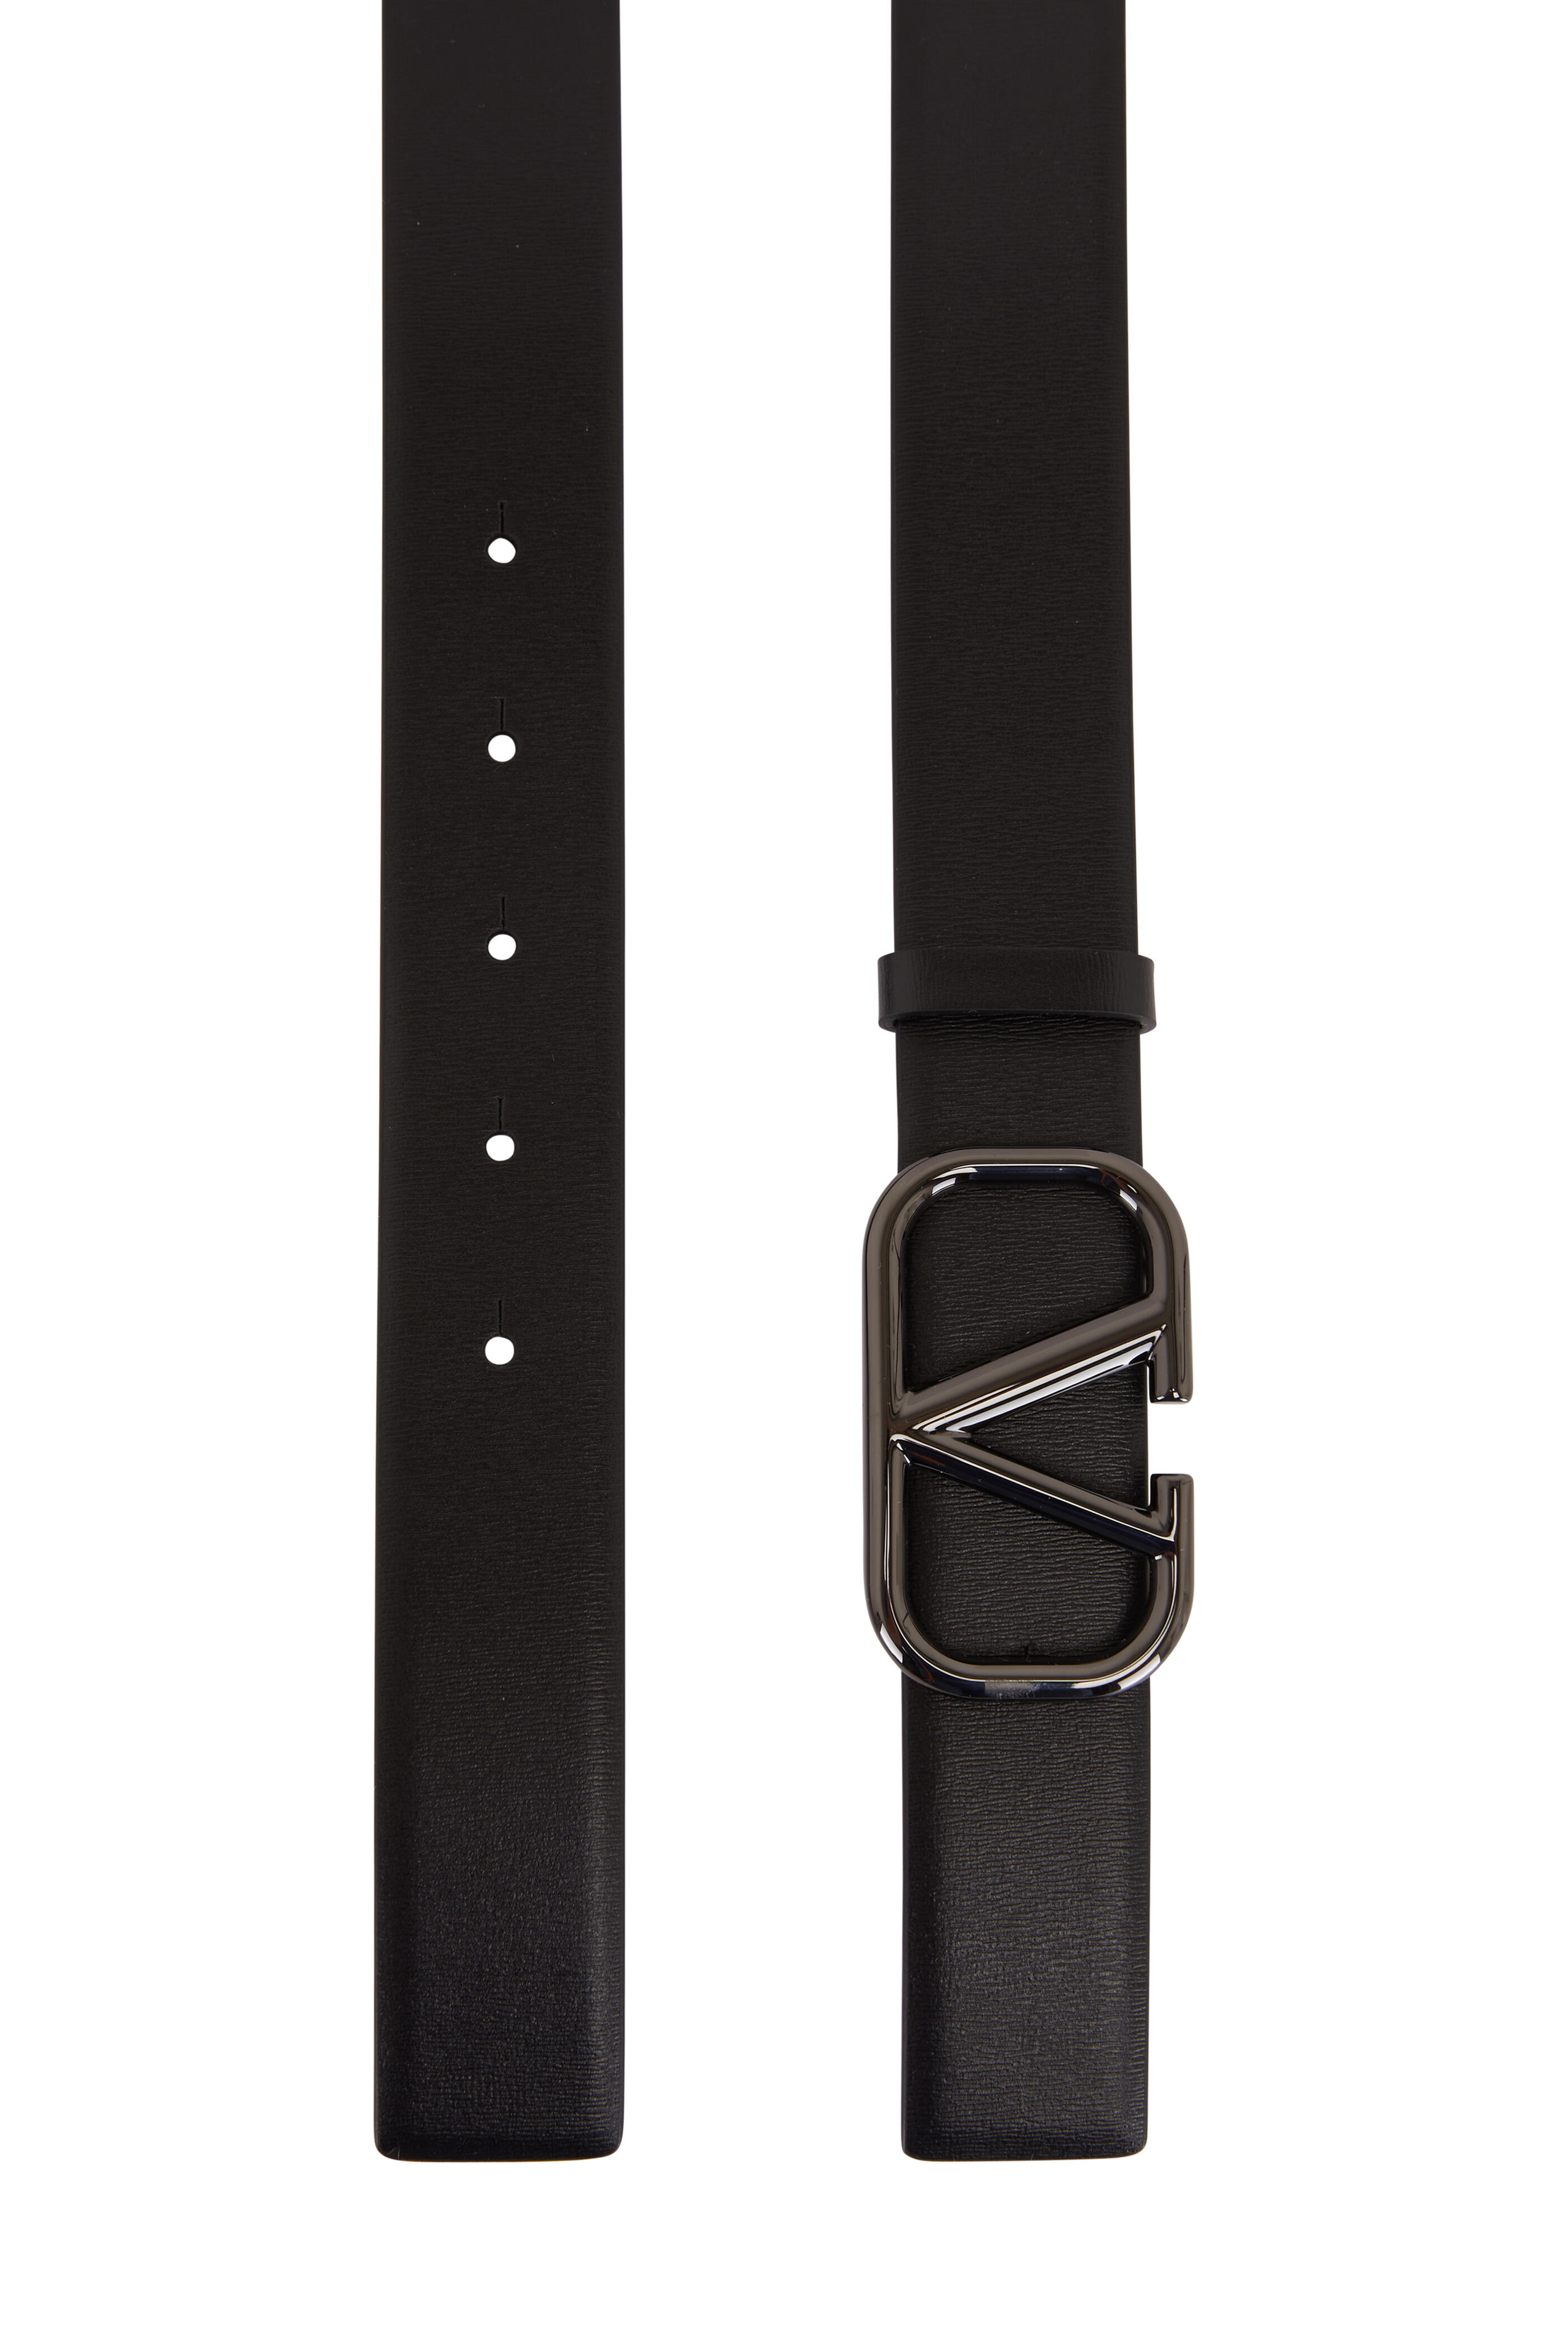 Valentino Garavani Women's Black & Brown Leather Vlogo Signature Belt | 80 by Mitchell Stores